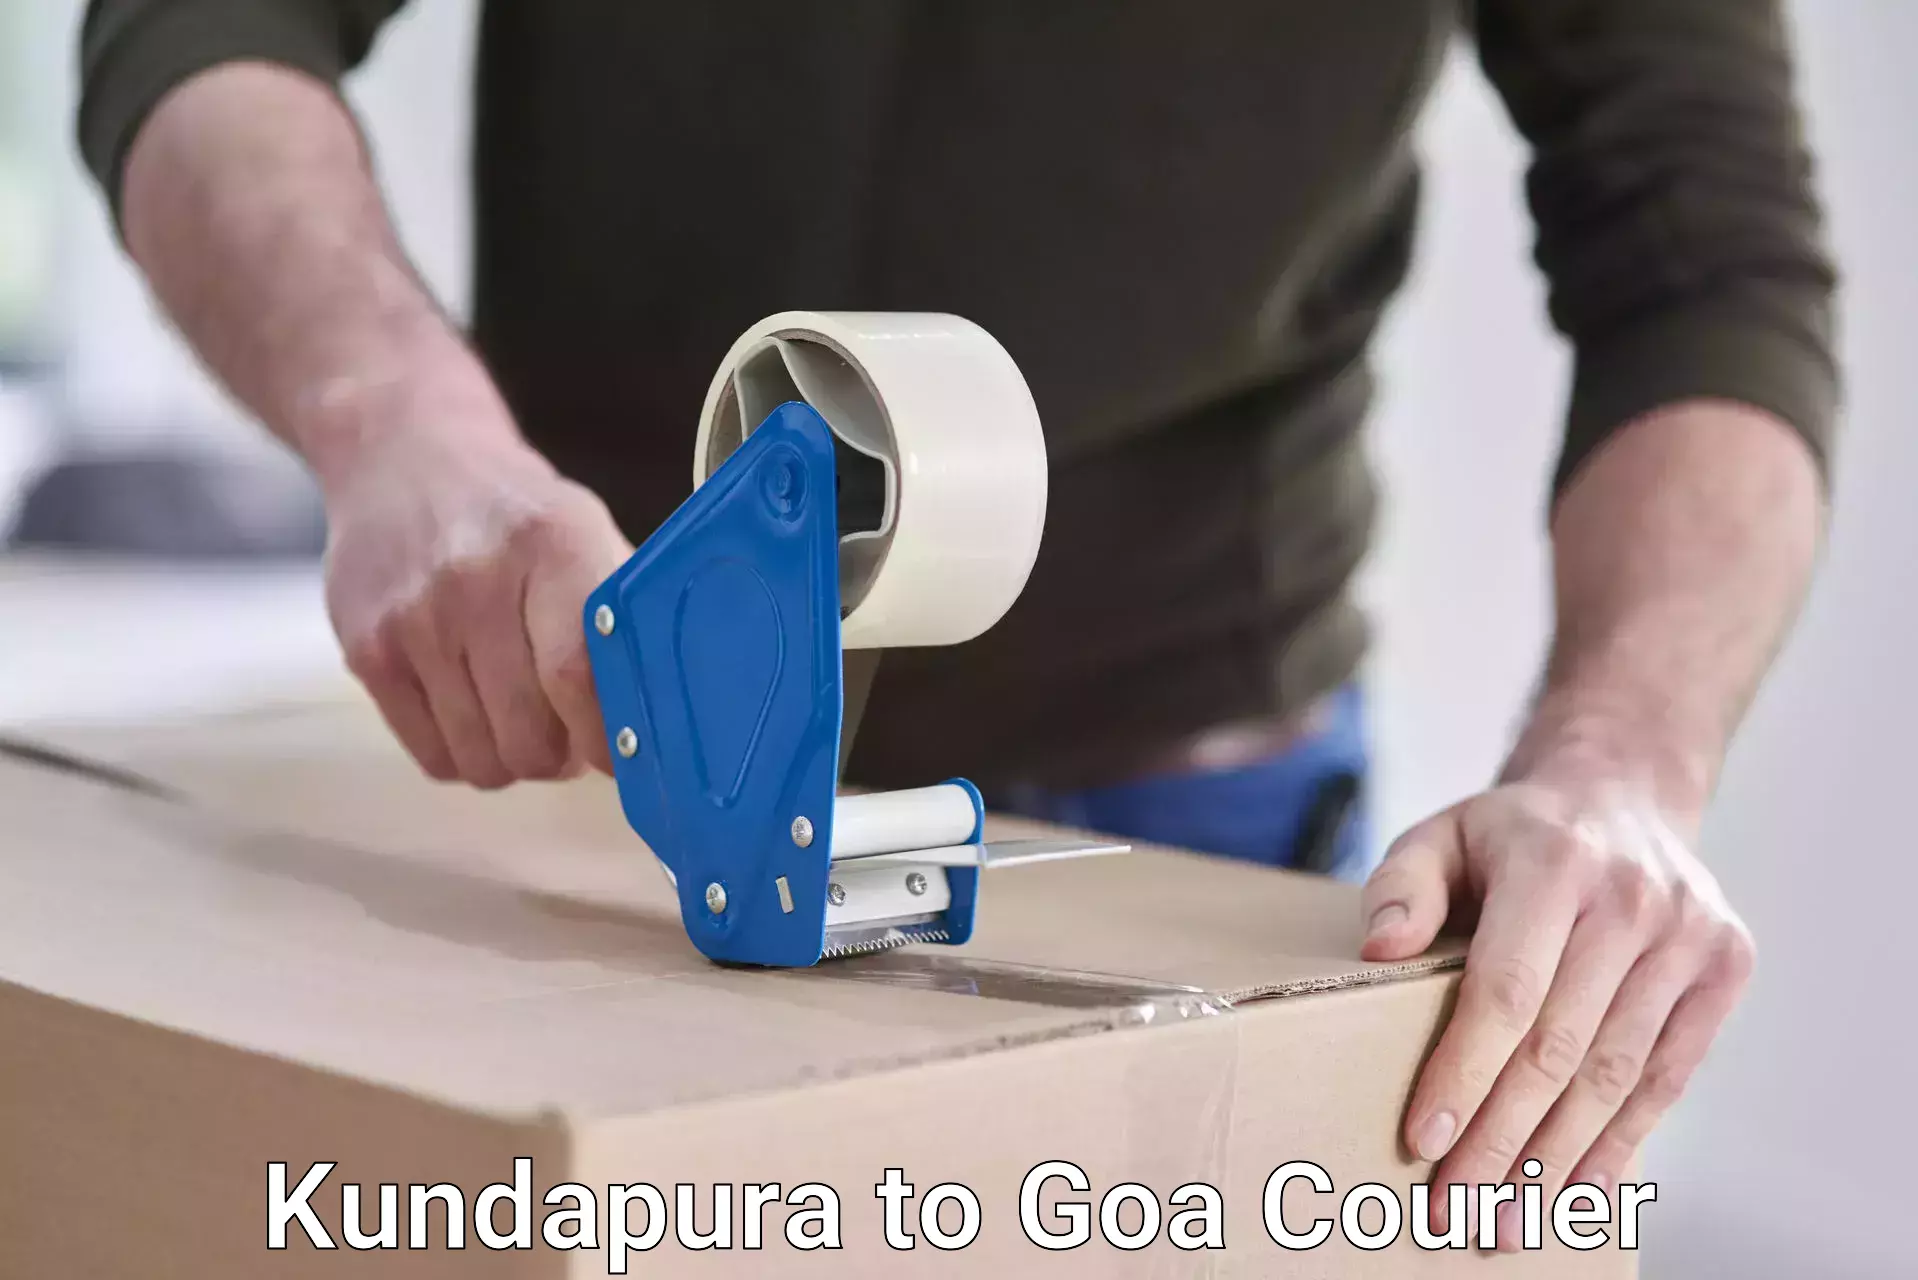 User-friendly courier app Kundapura to Goa